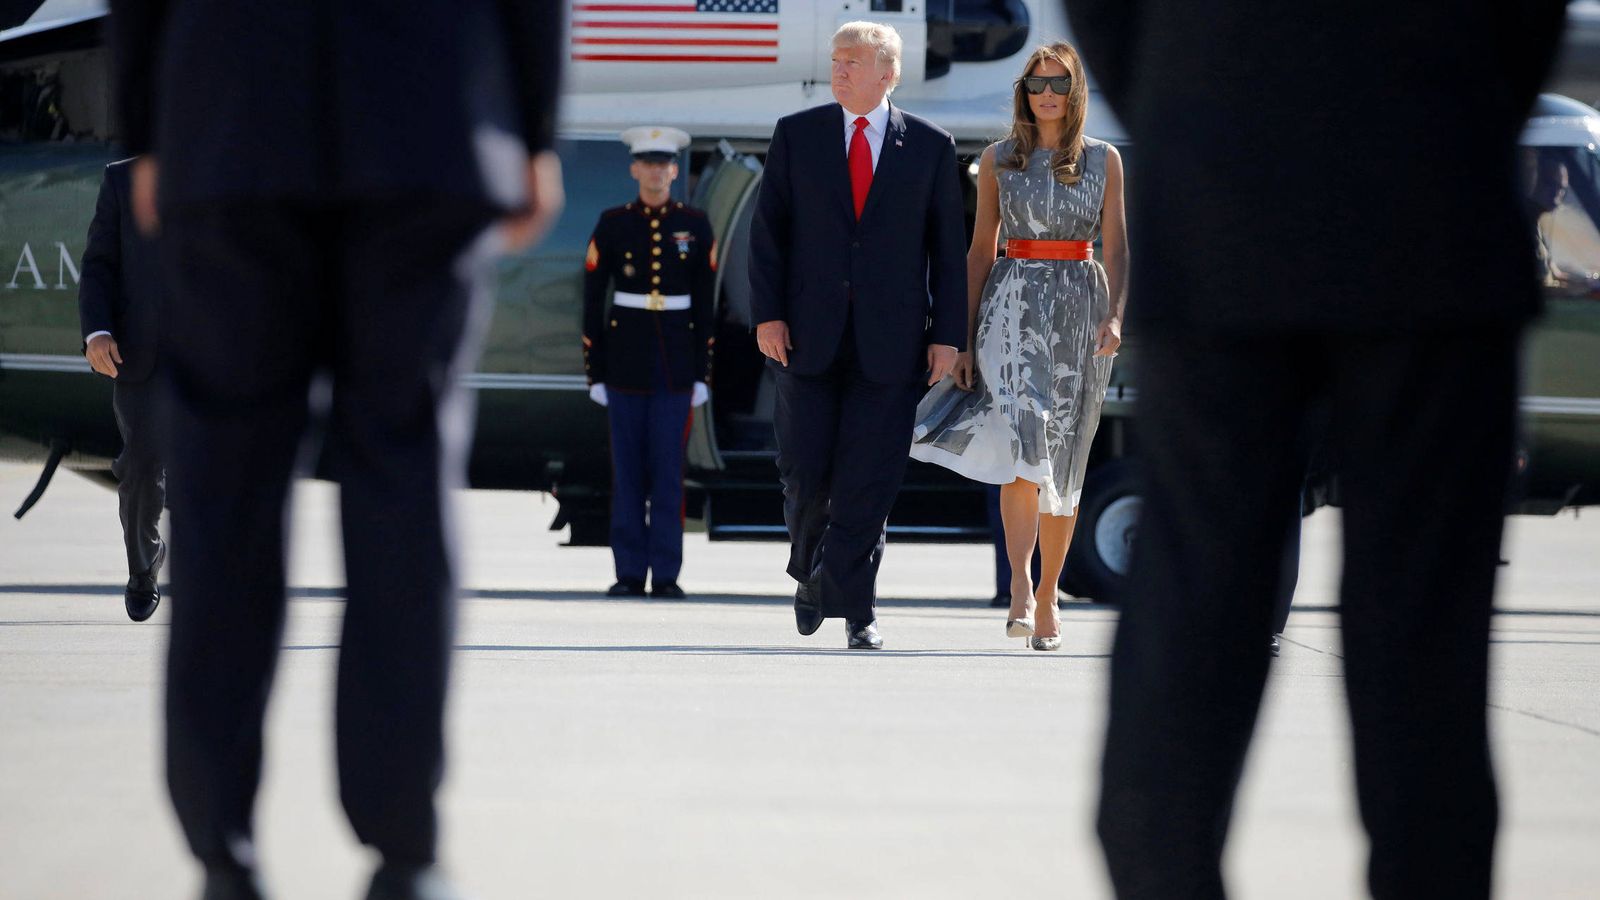 Foto: Donald Trump y la Primera Dama Melania Trump caminan hacia el Air Force One para regresar a Washington tras la cumbre del G20 en Hamburgo. (Reuters)